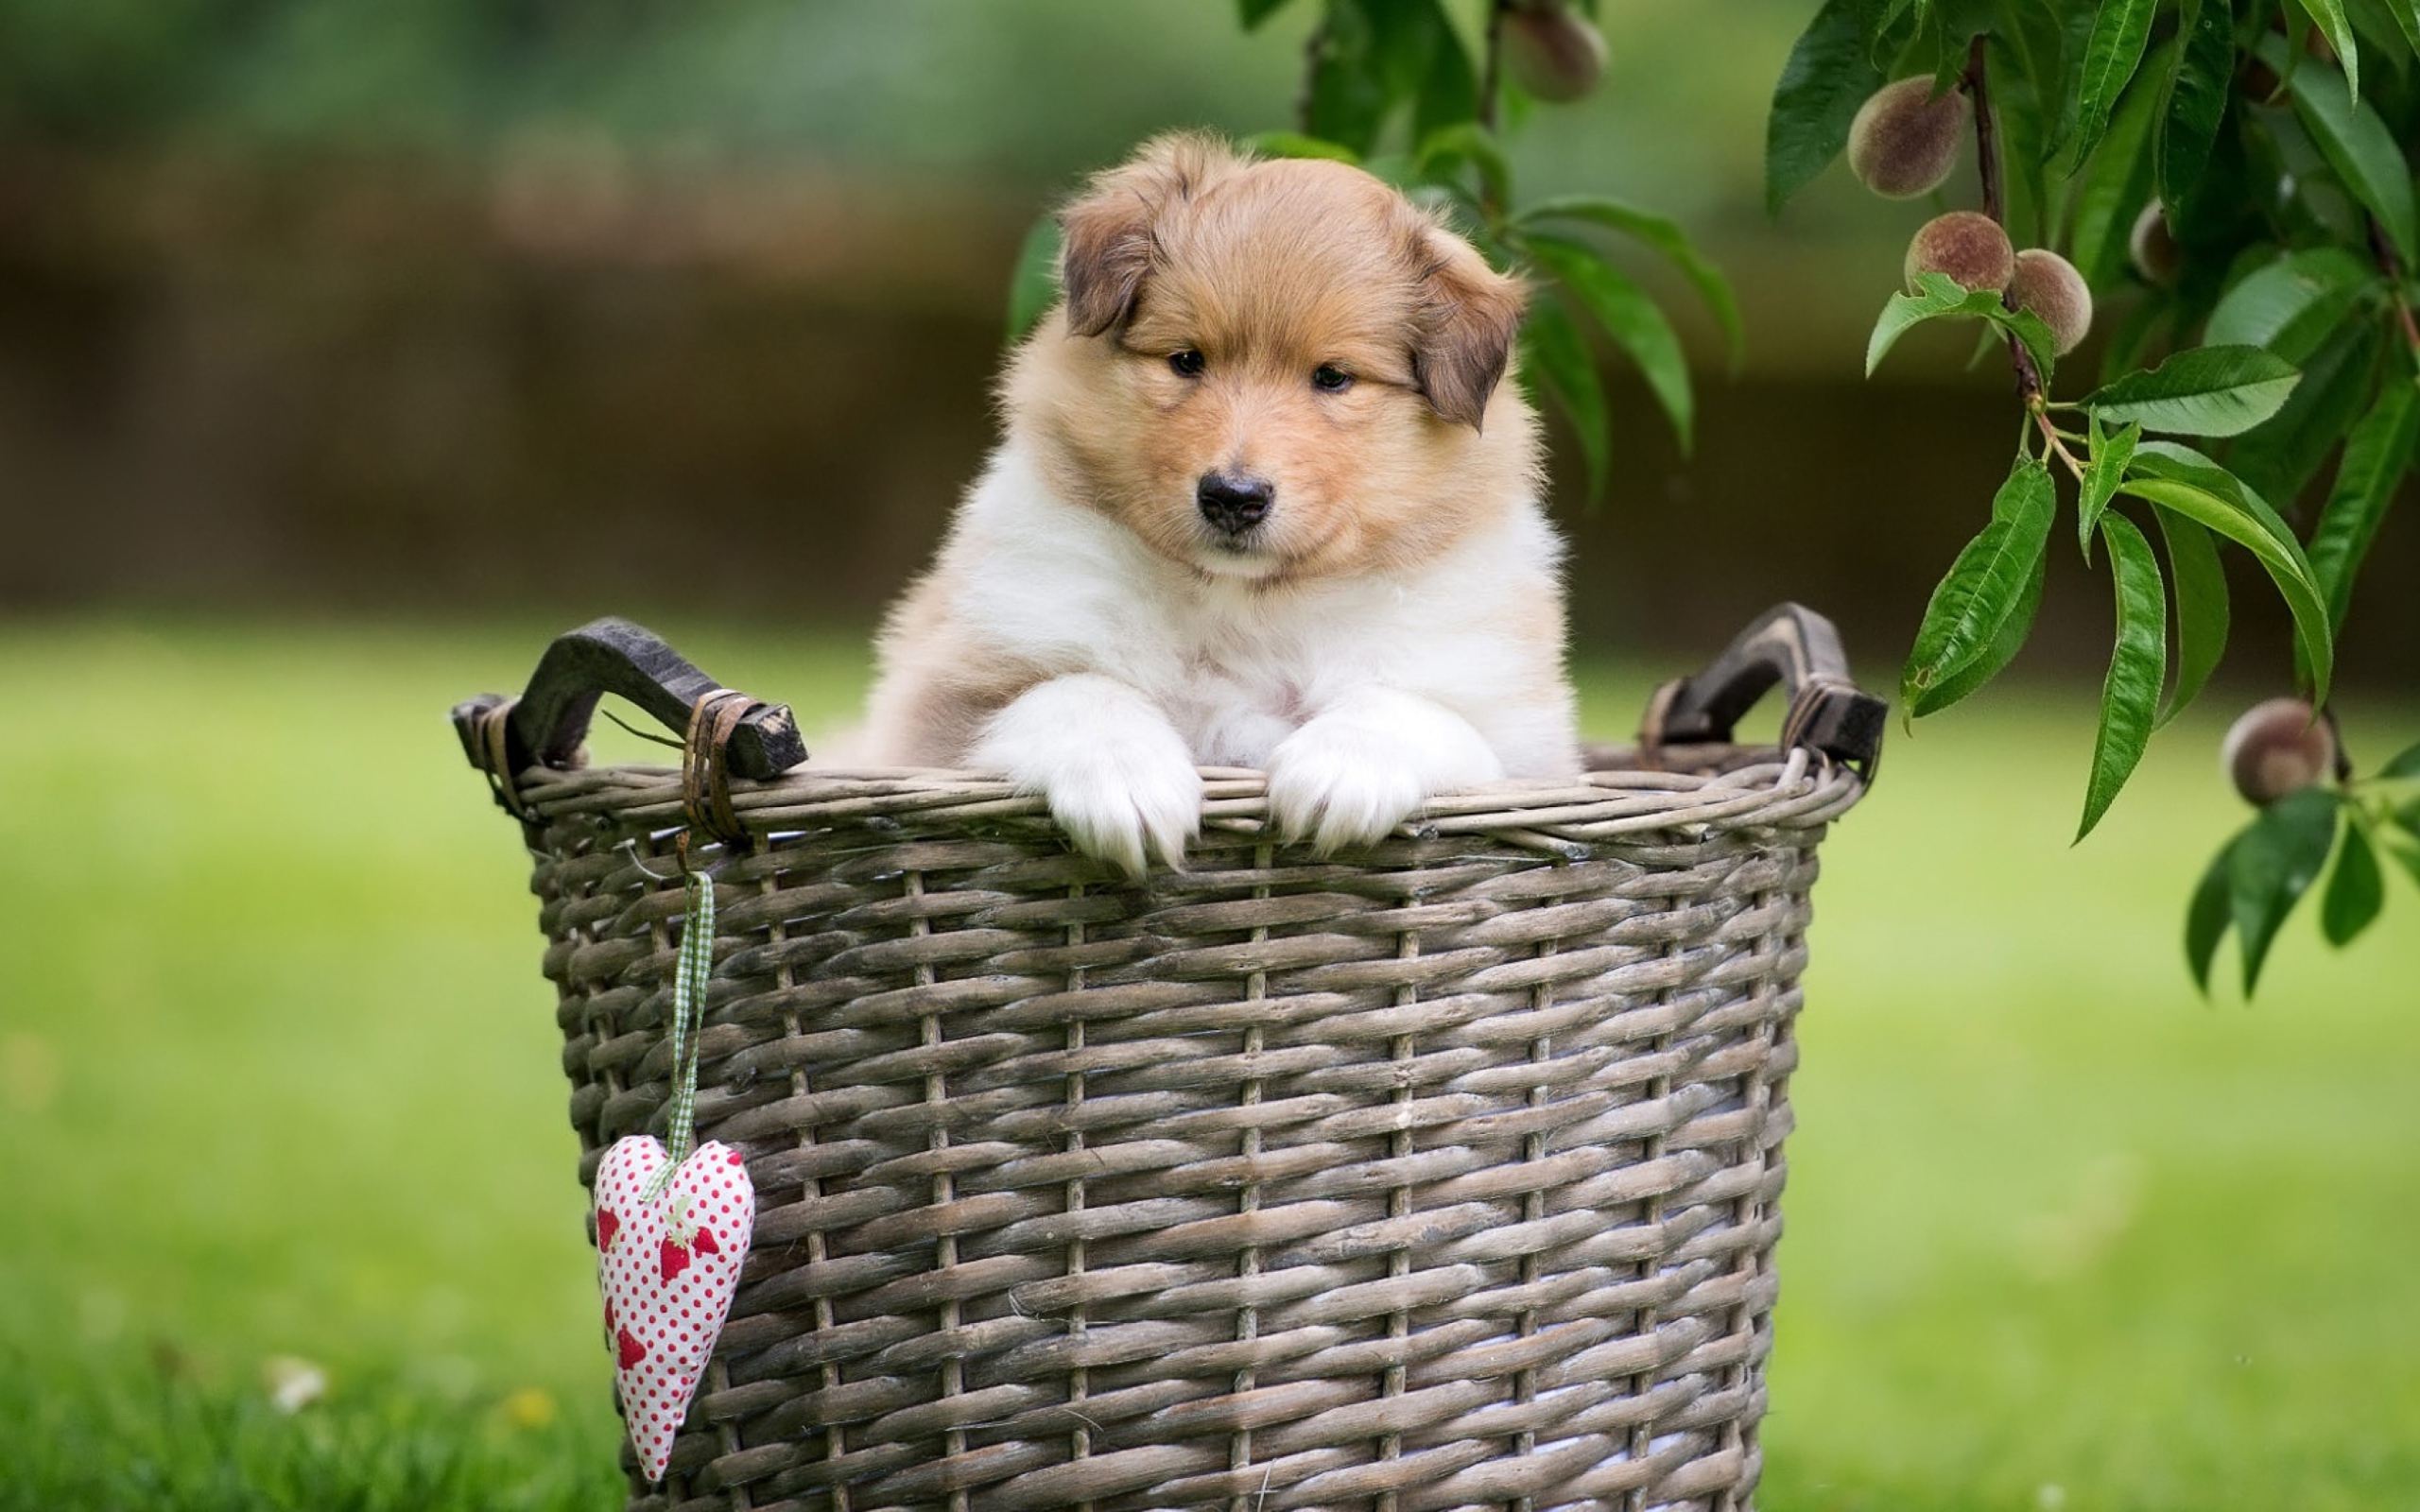 A little sheltie puppy sits in a wicker basket.